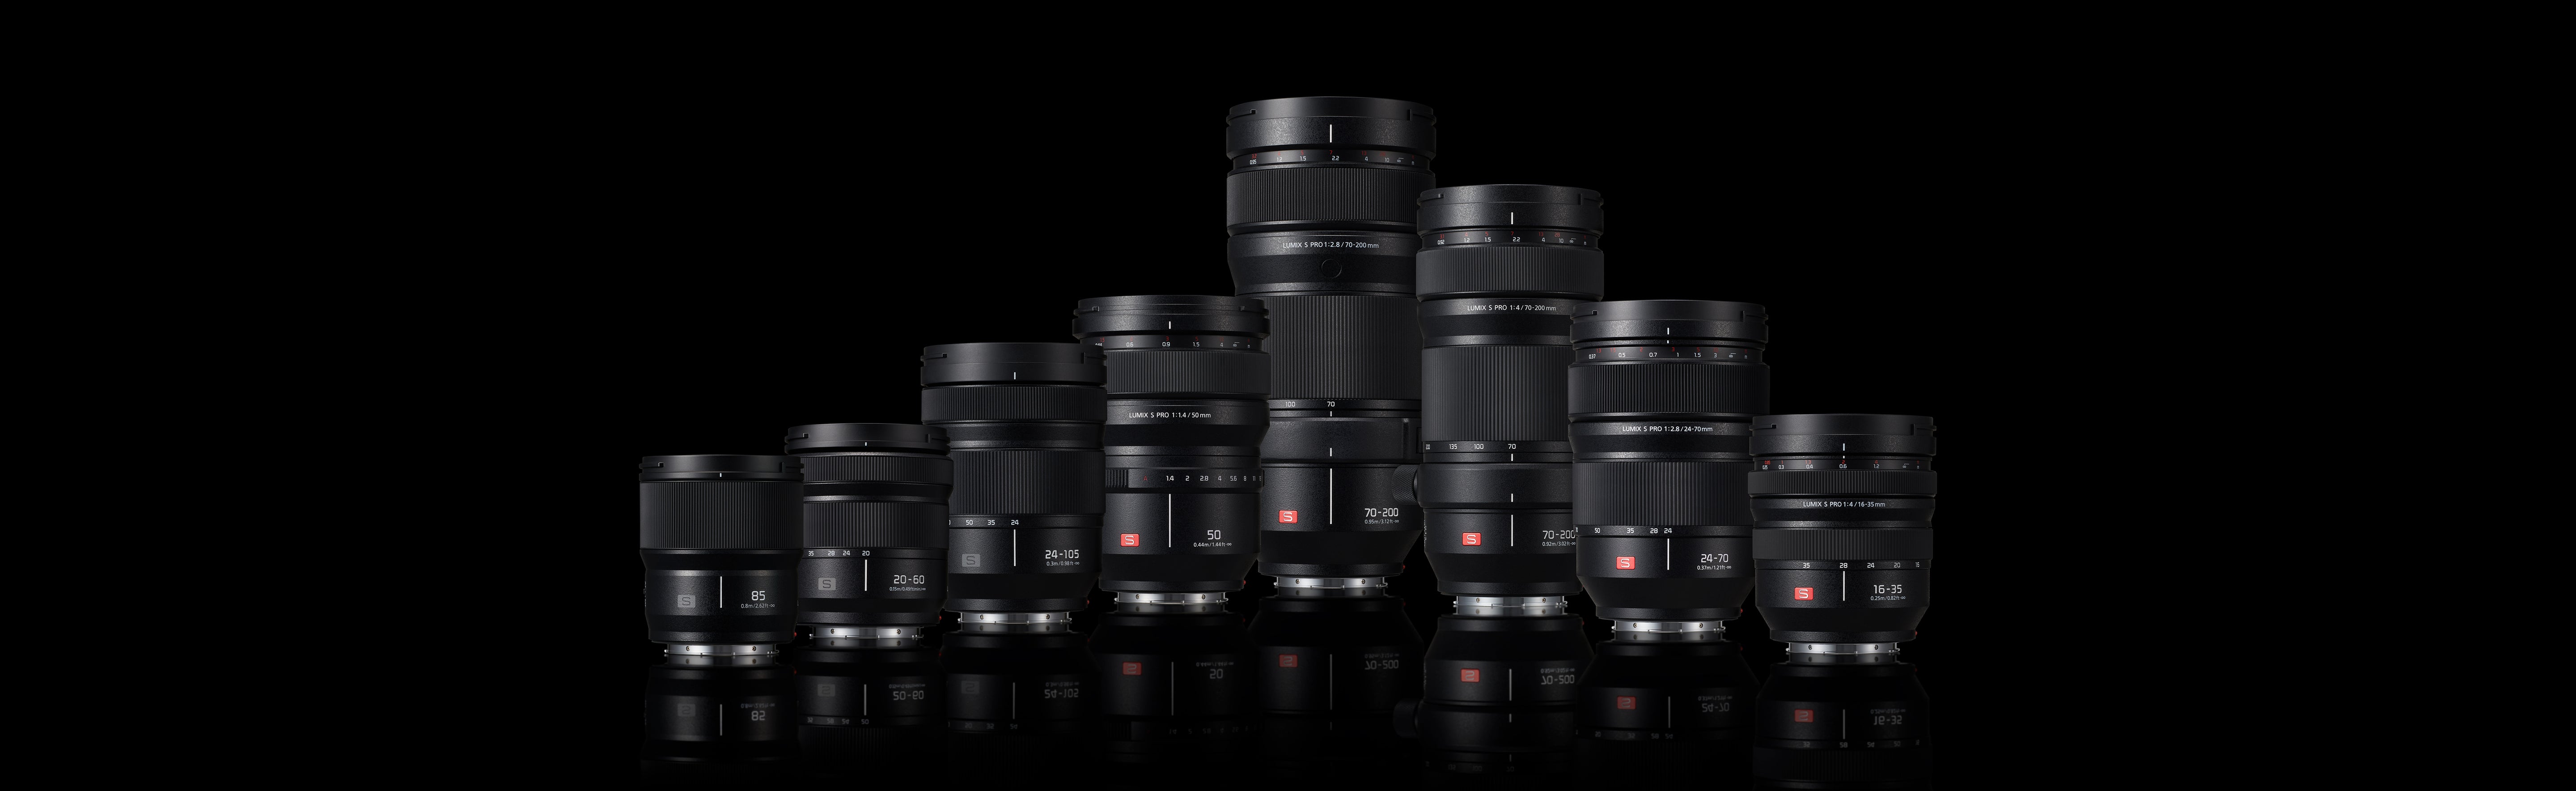 S Series Lenses